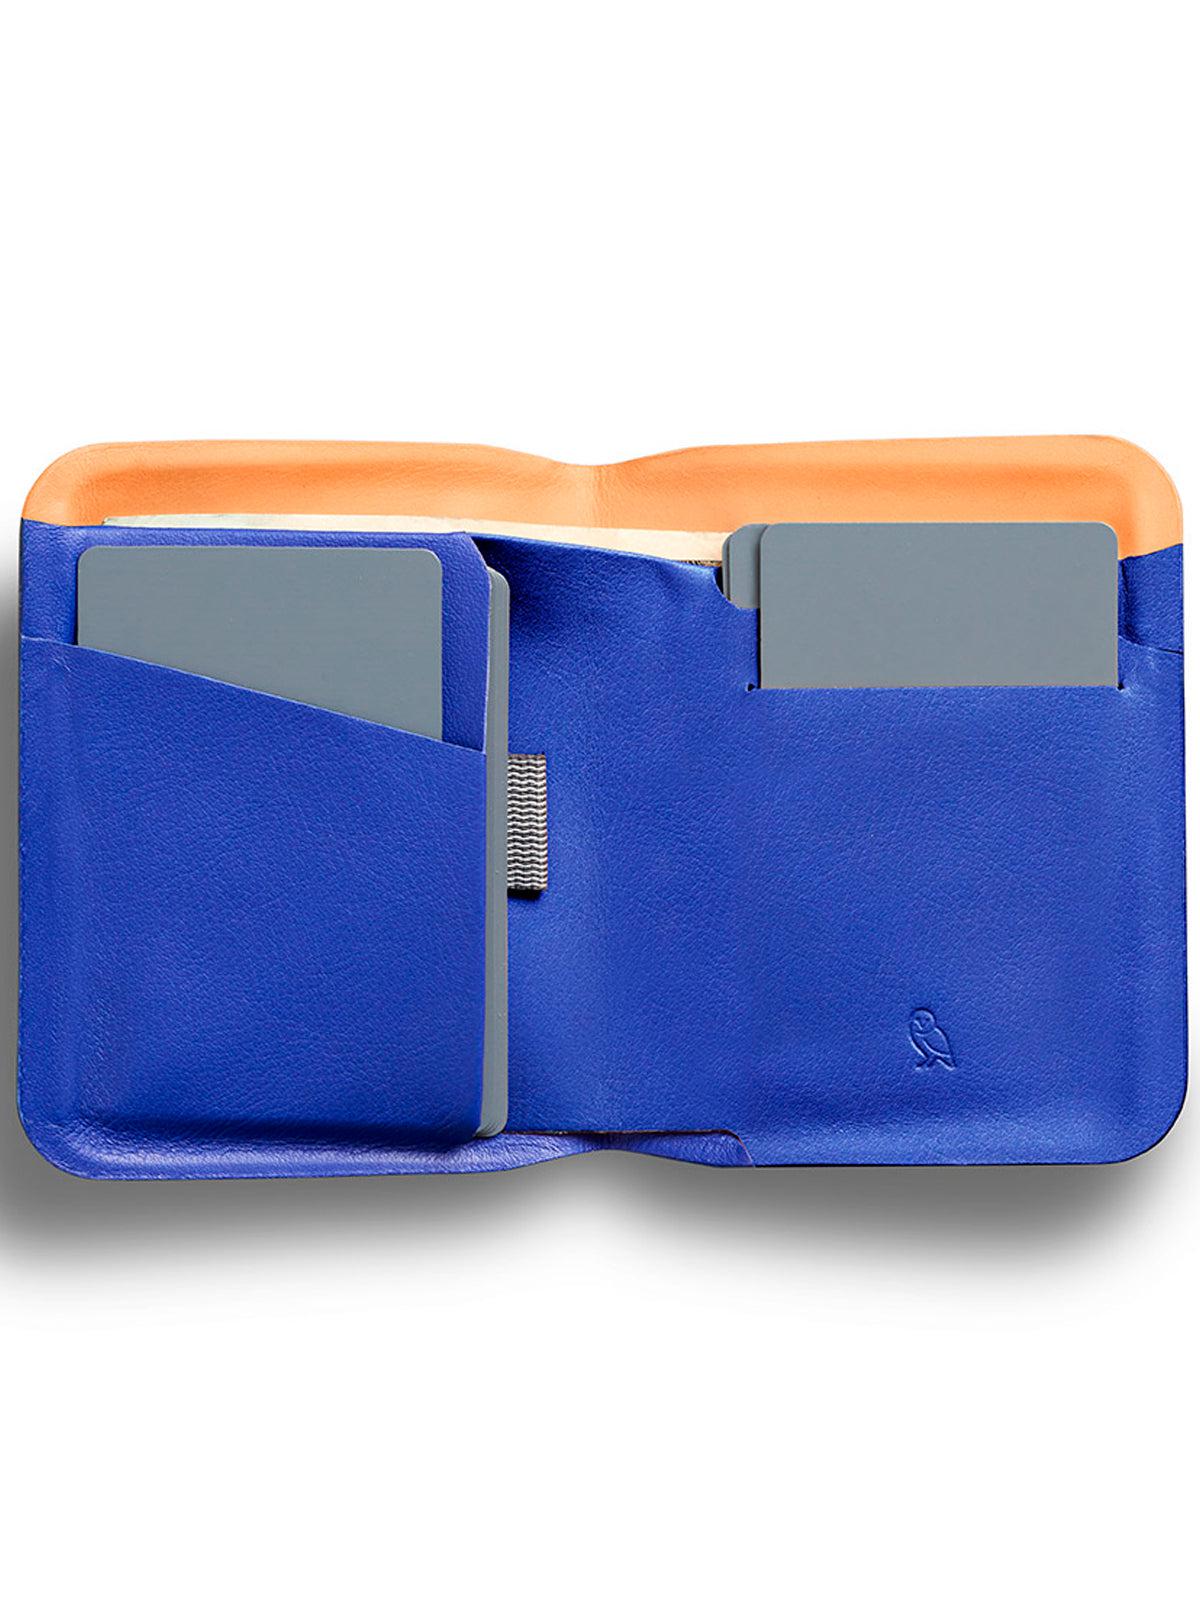 Bellroy APEX Note Sleeve Wallet Pepperblue RFID